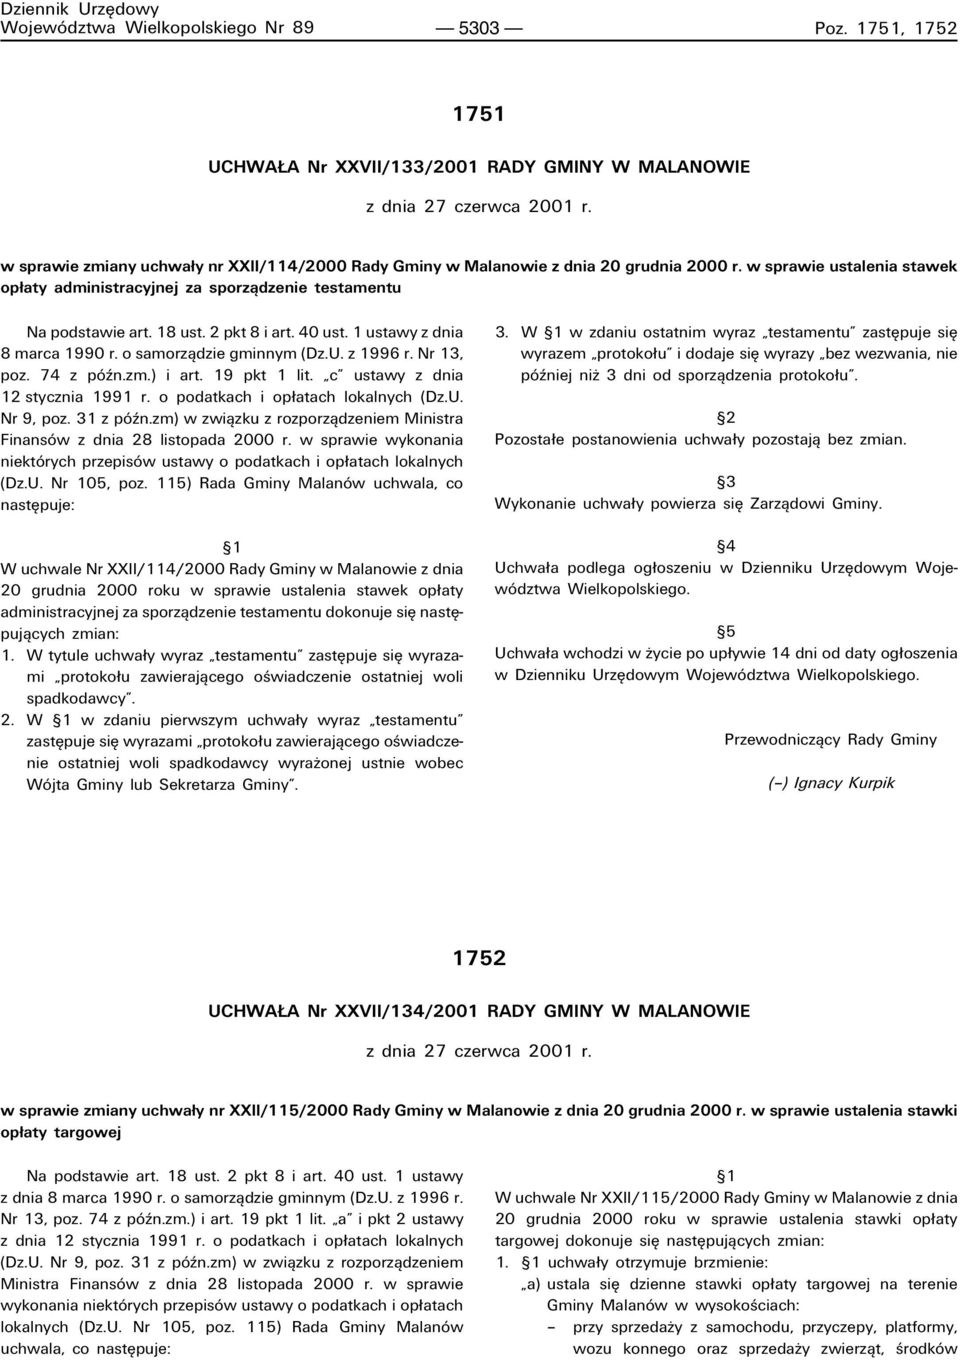 2 pkt 8 i art. 40 ust. 1 ustawy z dnia 8 marca 1990 r. o samorzπdzie gminnym (Dz.U. z 1996 r. Nr 13, poz. 74 z pûün.zm.) i art. 19 pkt 1 lit. ìcî ustawy z dnia 12 stycznia 1991 r.